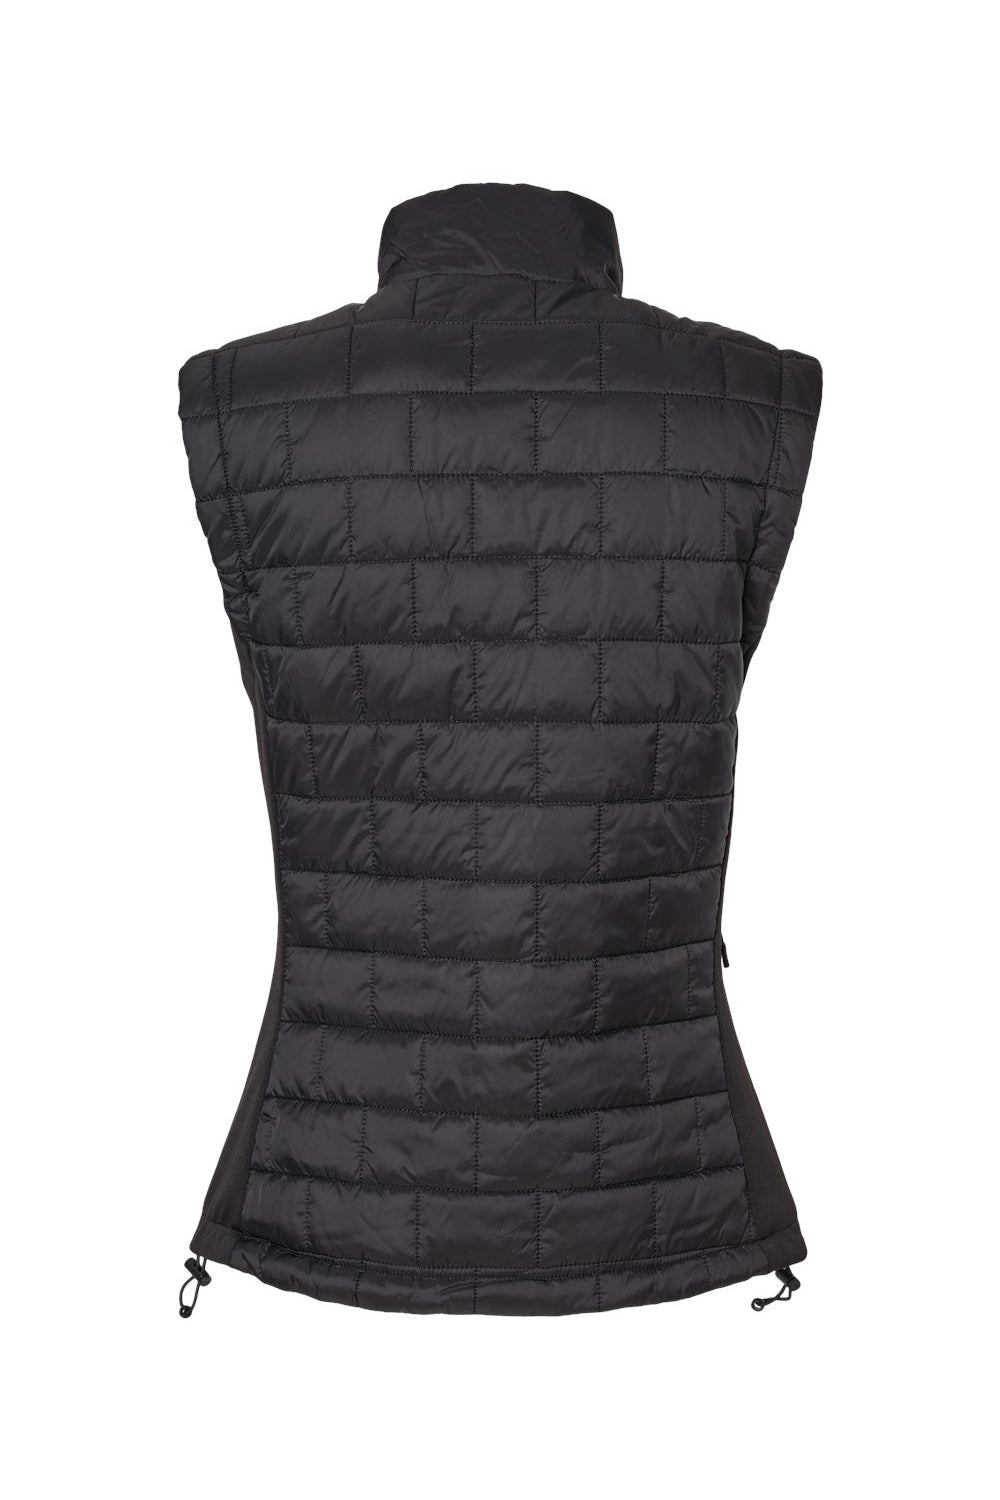 Burnside 5703 Womens Element Full Zip Puffer Vest Black Flat Back